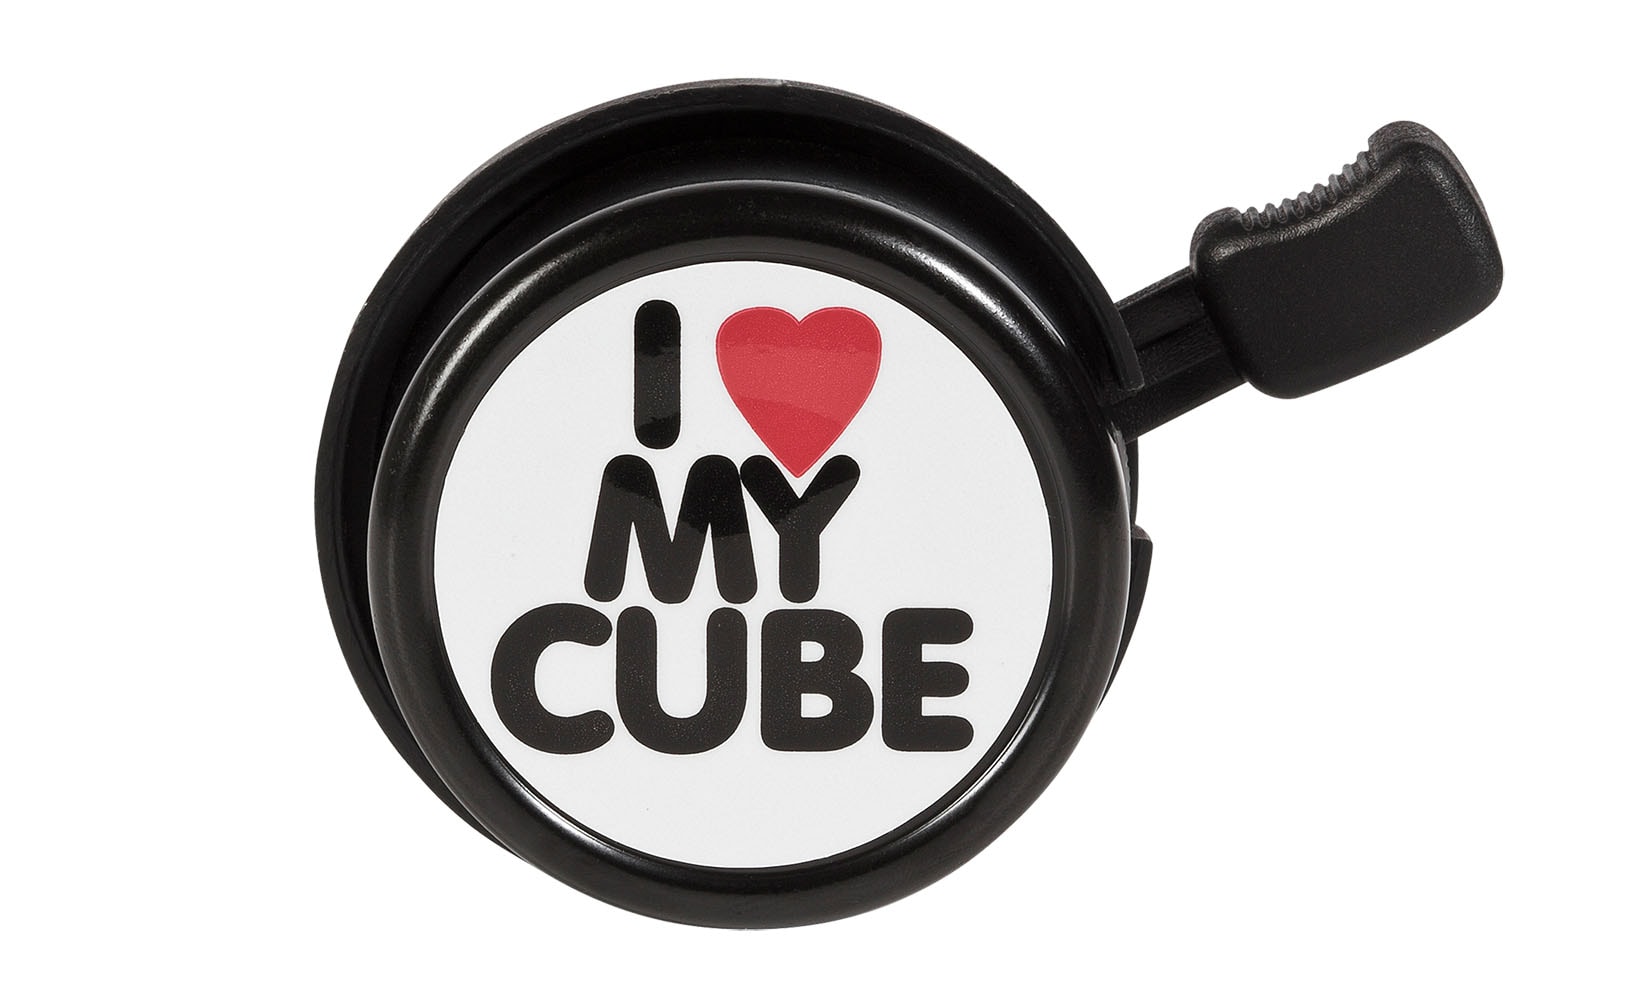 zvono-cube-i-love-my-cube-15050_5ea007c92d362.jpg